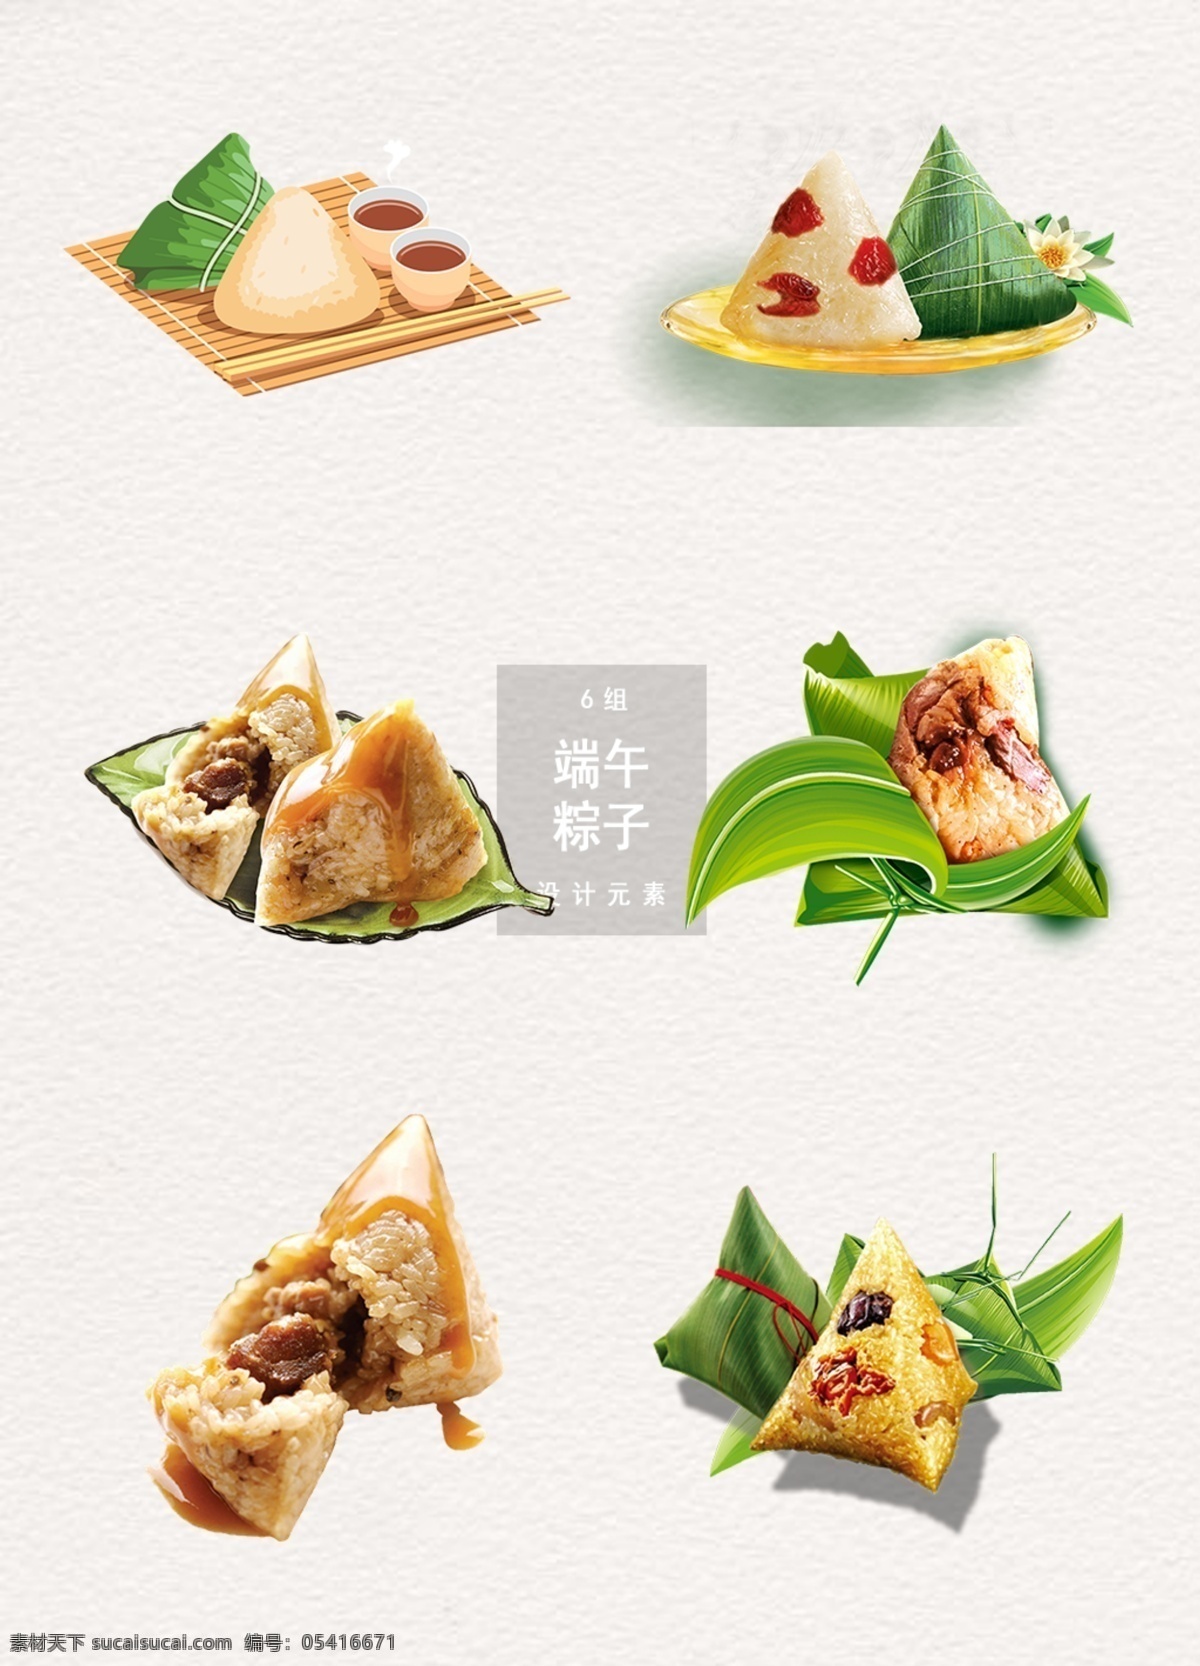 端午节 粽子 端午 元素 食物 粽子图片